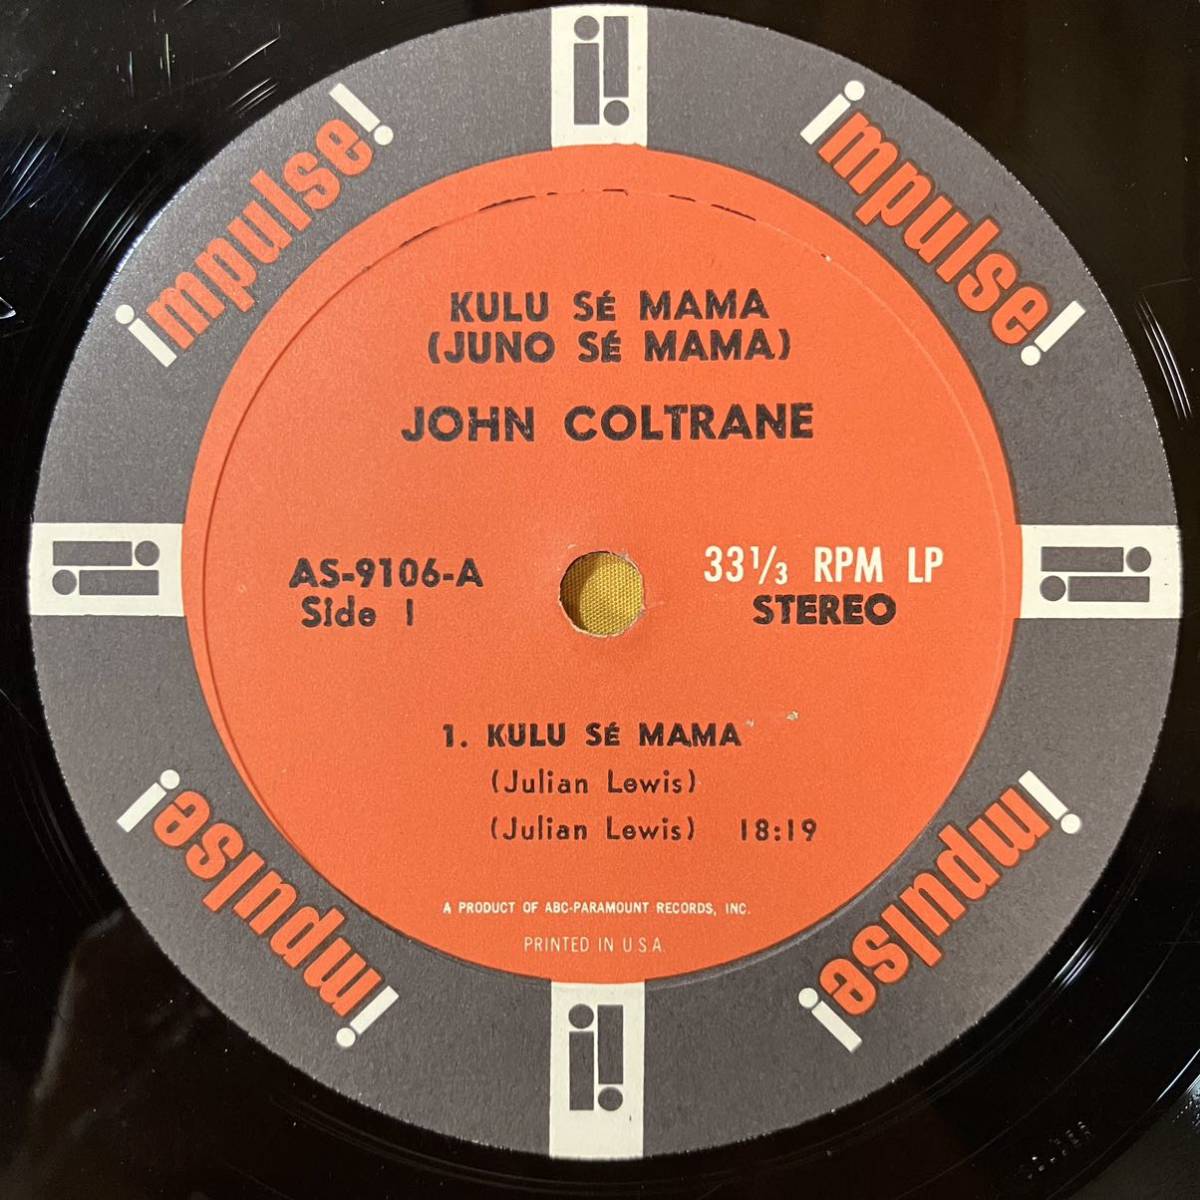 07H ジャズ VAN GELDER US盤 ジョン・コルトレーン JOHN COLTRANE